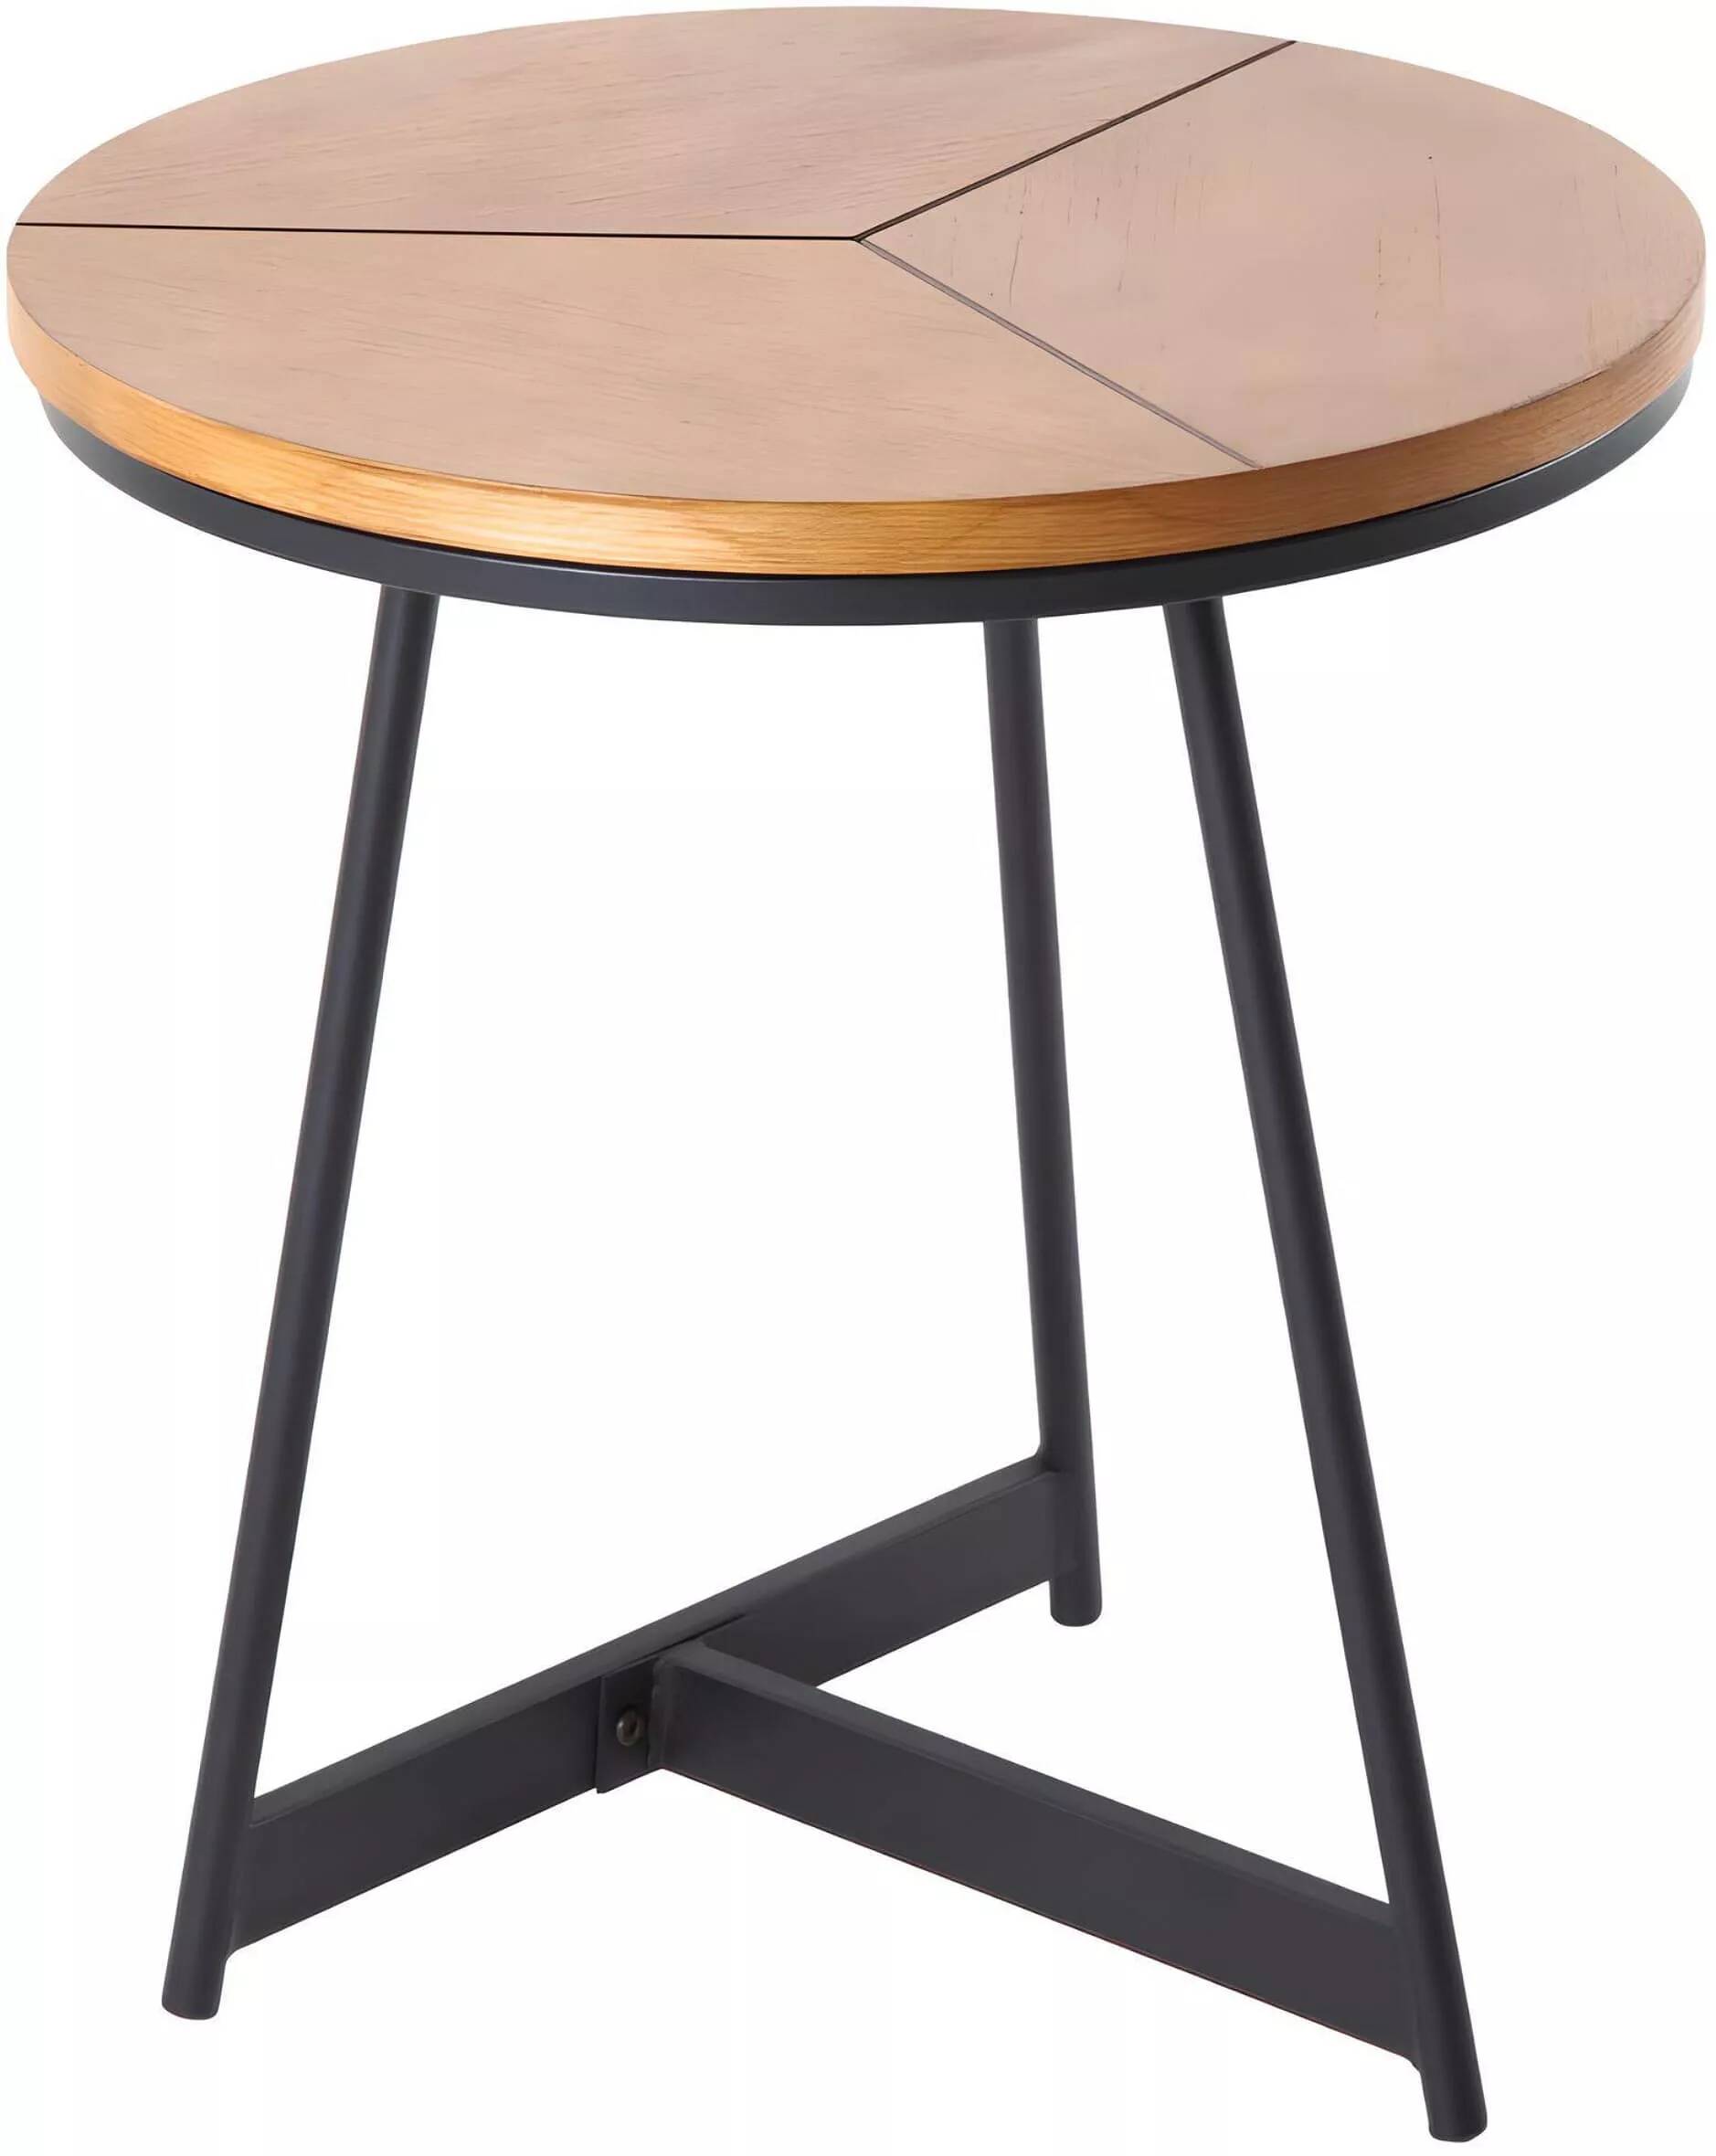 Table d'appoint en bois chêne et métal noir